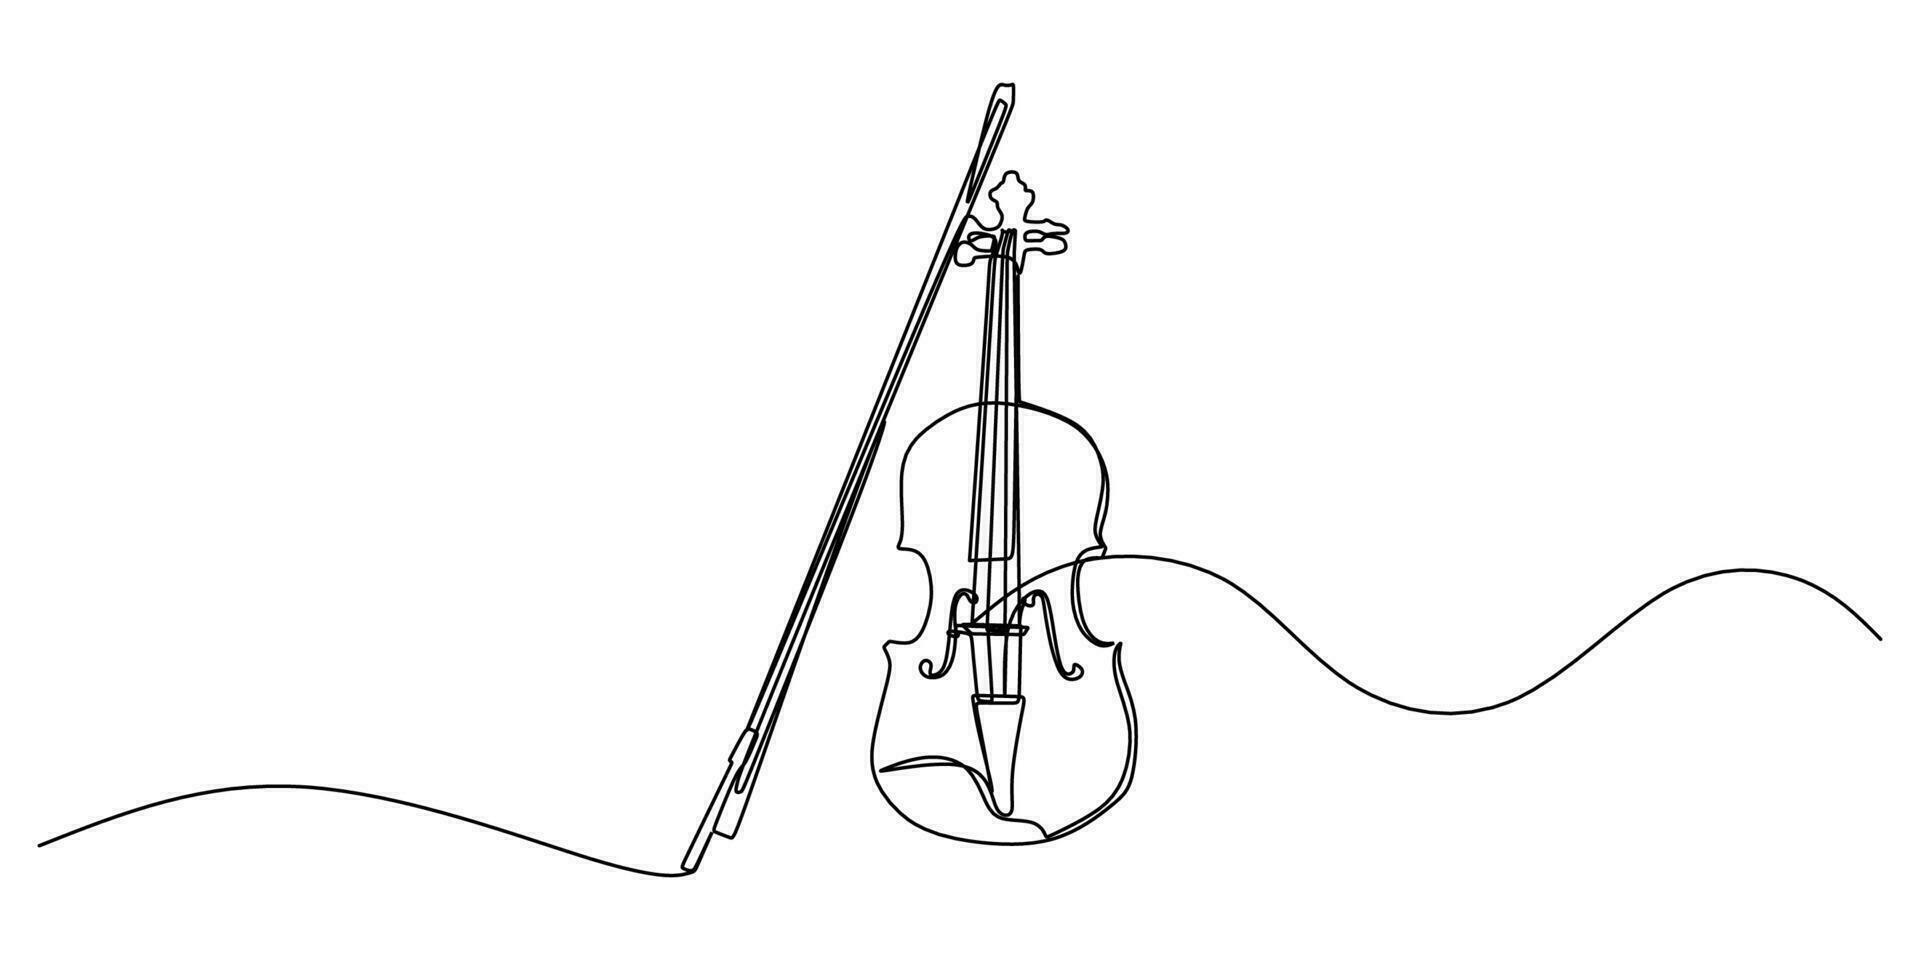 kontinuierlich Single einer Linie von Violine isoliert auf Weiß Hintergrund. vektor